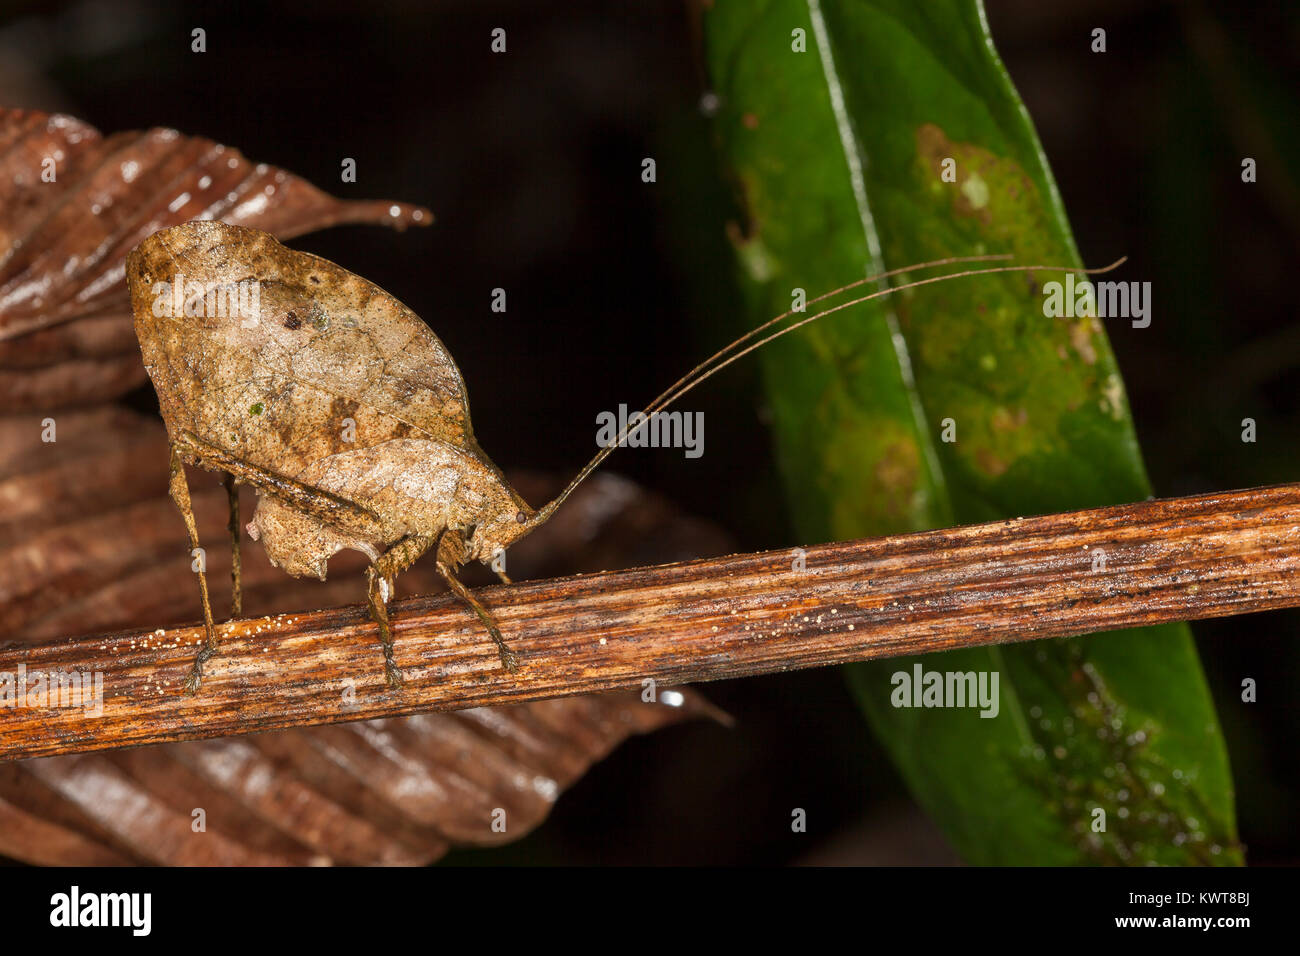 Una ben mimetizzata foglia morta-mimando katydid (Ordine Orthoptera, Famiglia Tettigoniidae) ovipositing (deposizione delle uova) in uno stelo. Le foreste pluviali delle pianure di Foto Stock